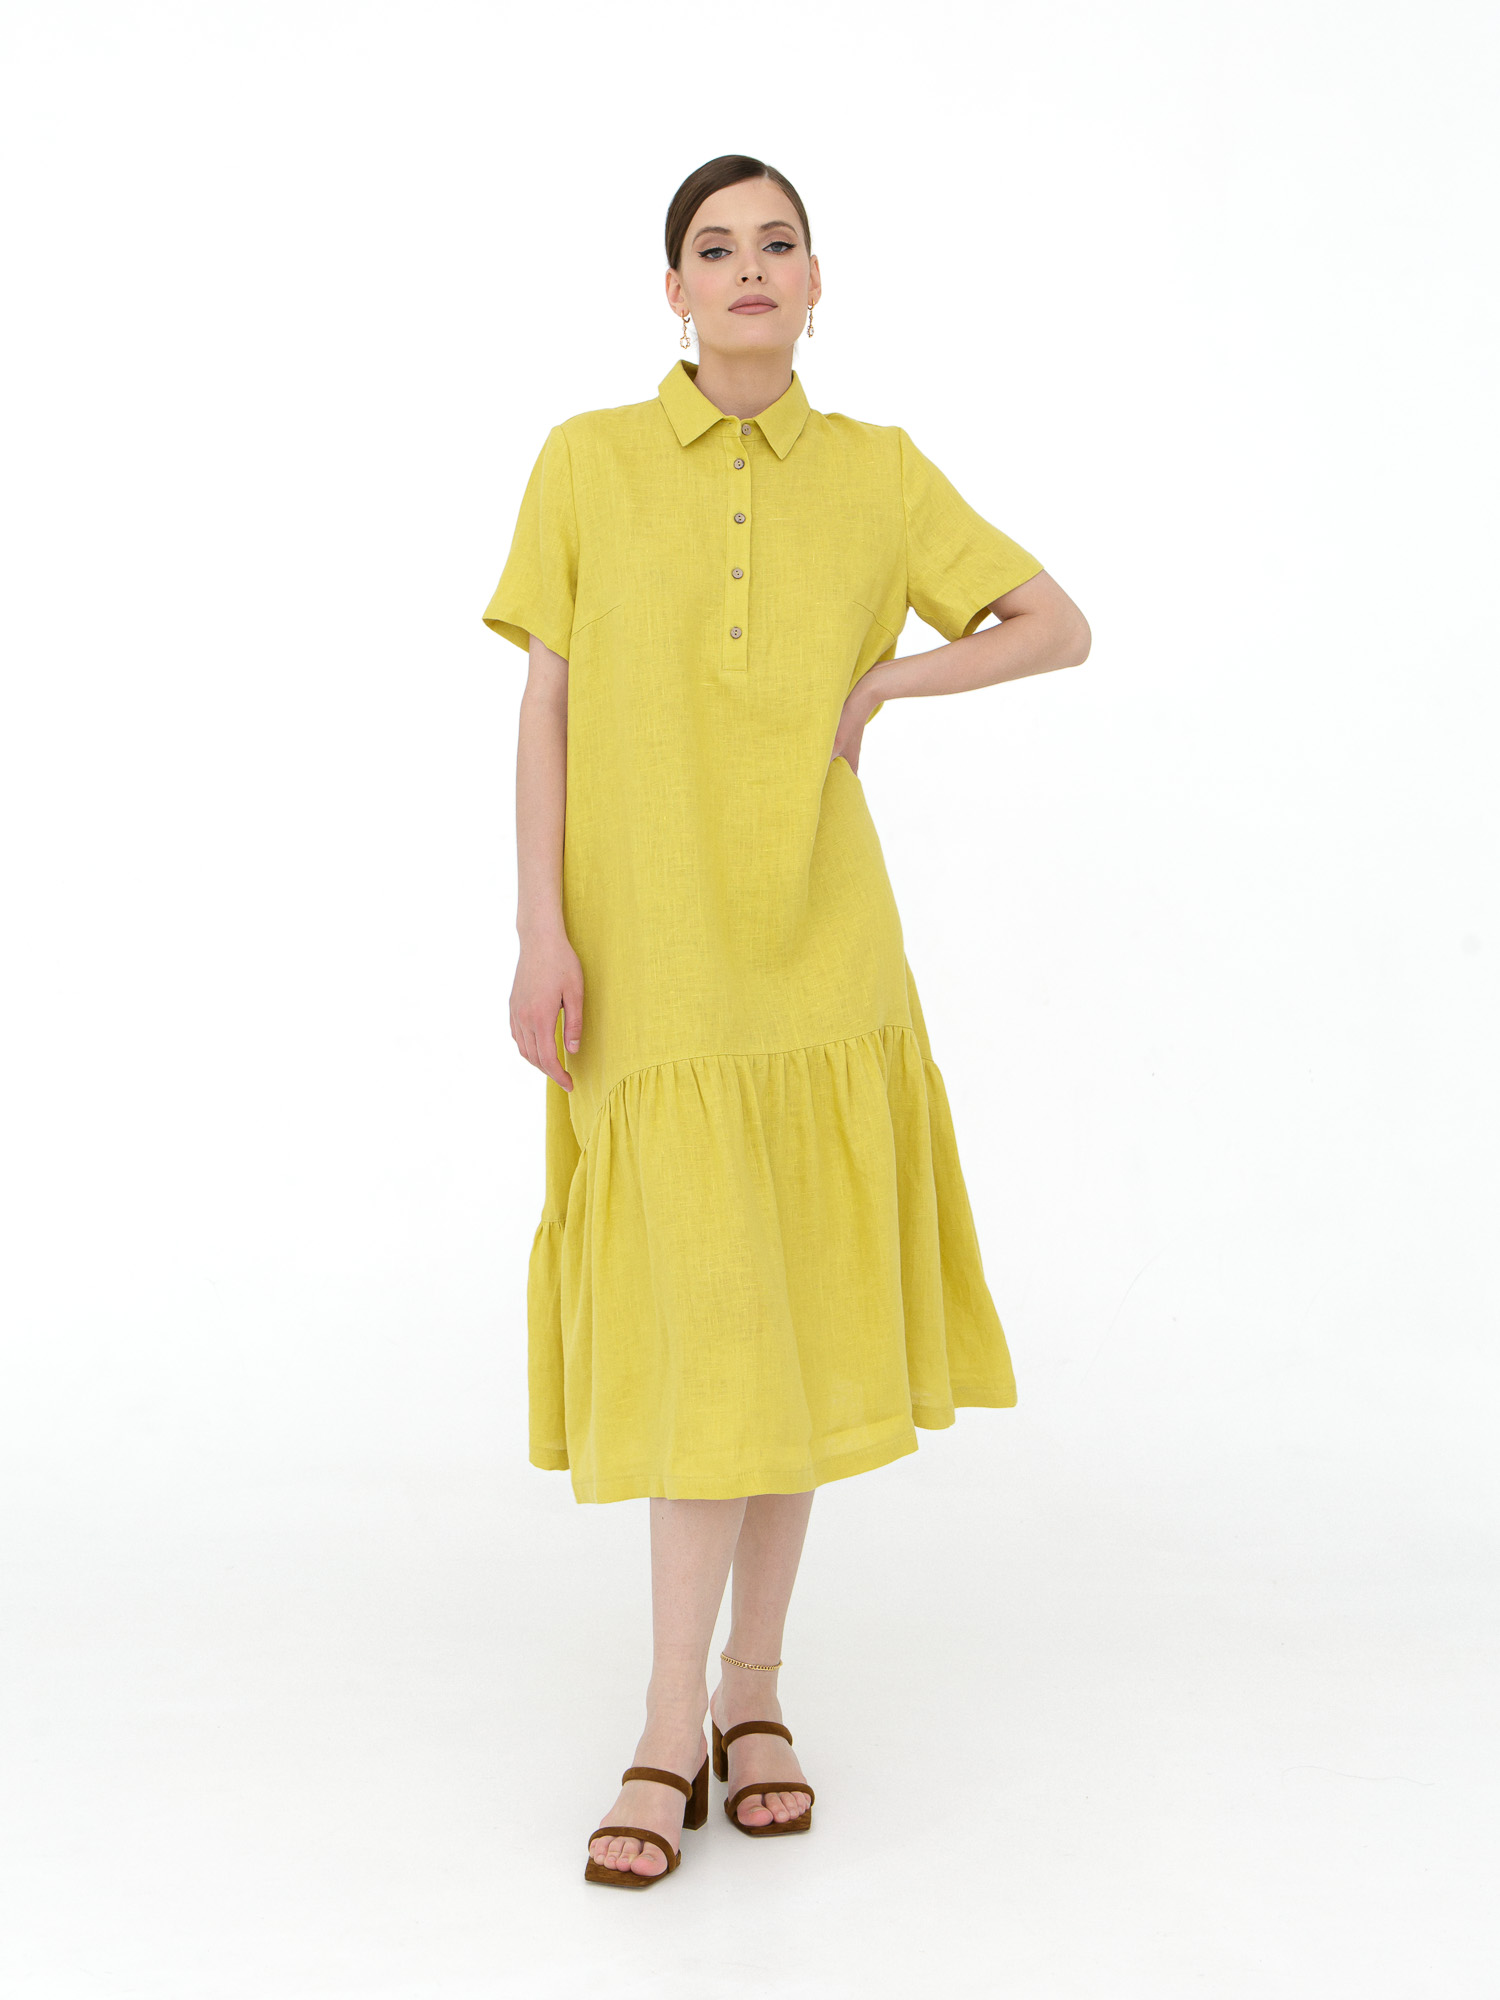 Платье женское КЛ-7521-ИЛ23 пыльно-желтый 52 ELECTRA STYLE, цвет пыльно-жёлтый, размер 52